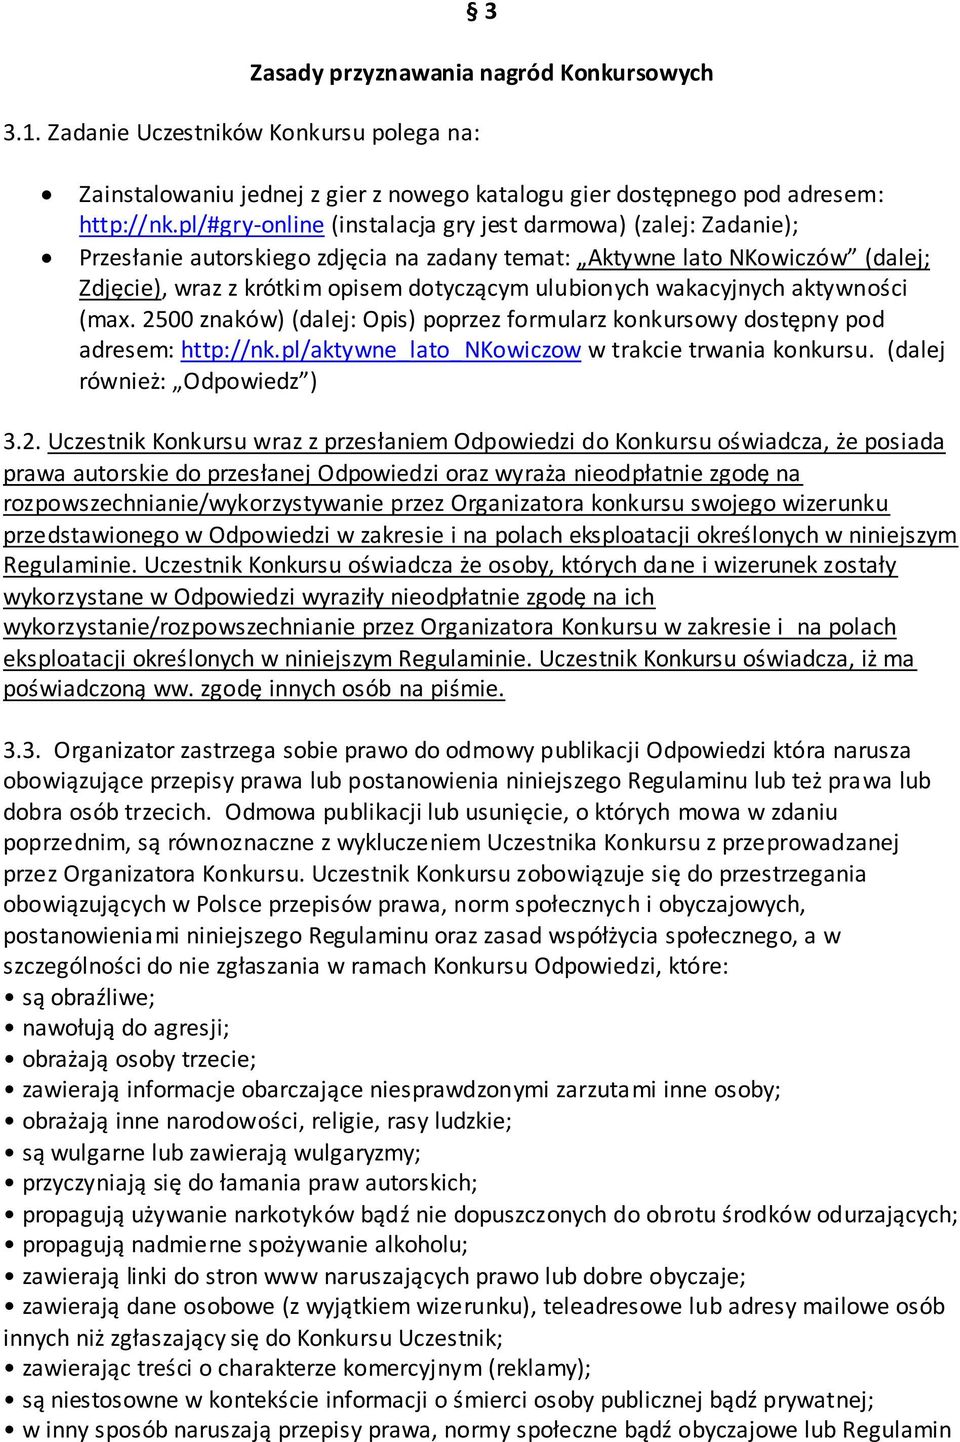 wakacyjnych aktywności (max. 2500 znaków) (dalej: Opis) poprzez formularz konkursowy dostępny pod adresem: http://nk.pl/aktywne_lato_nkowiczow w trakcie trwania konkursu.